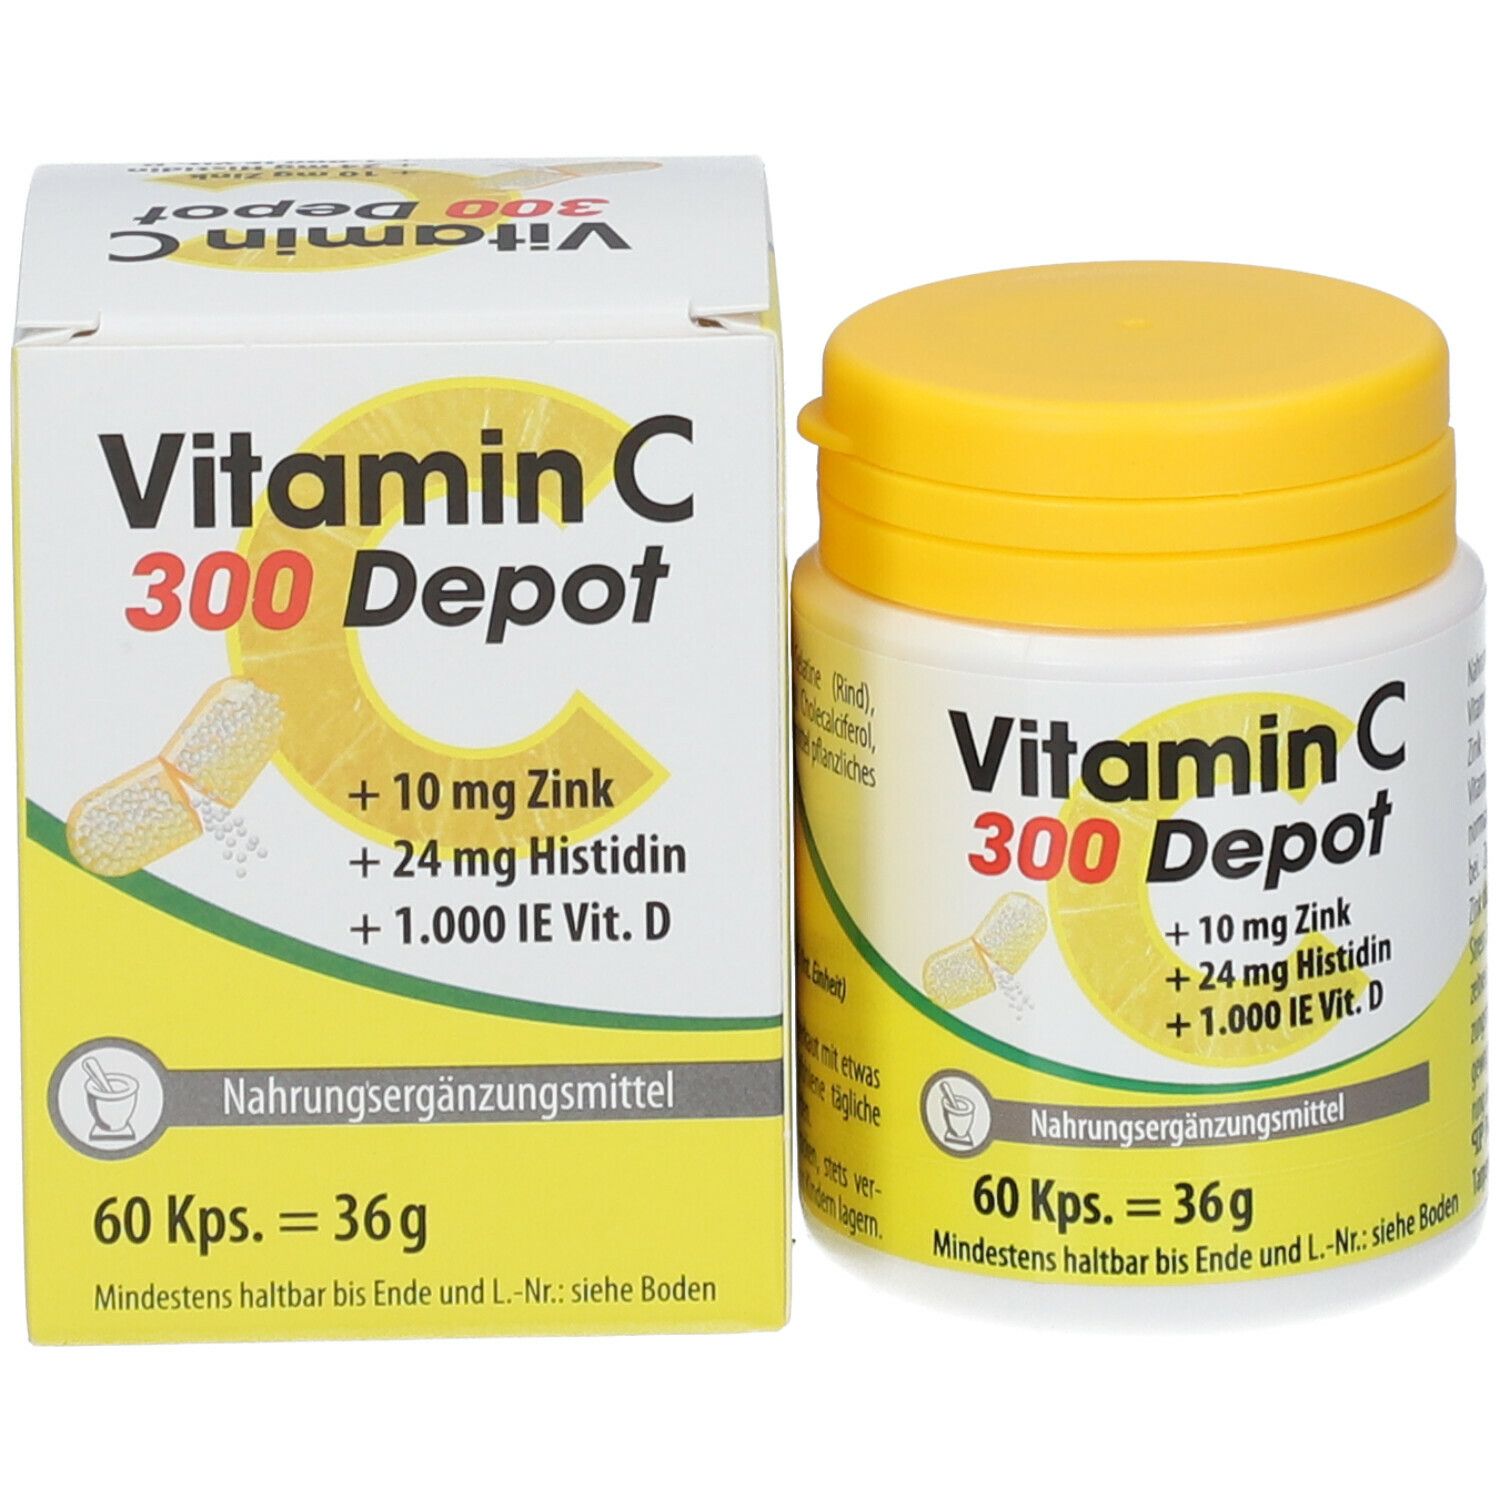 VITAMIN C 300 Depot + Zink + Histidin + Vitamin D Kapseln